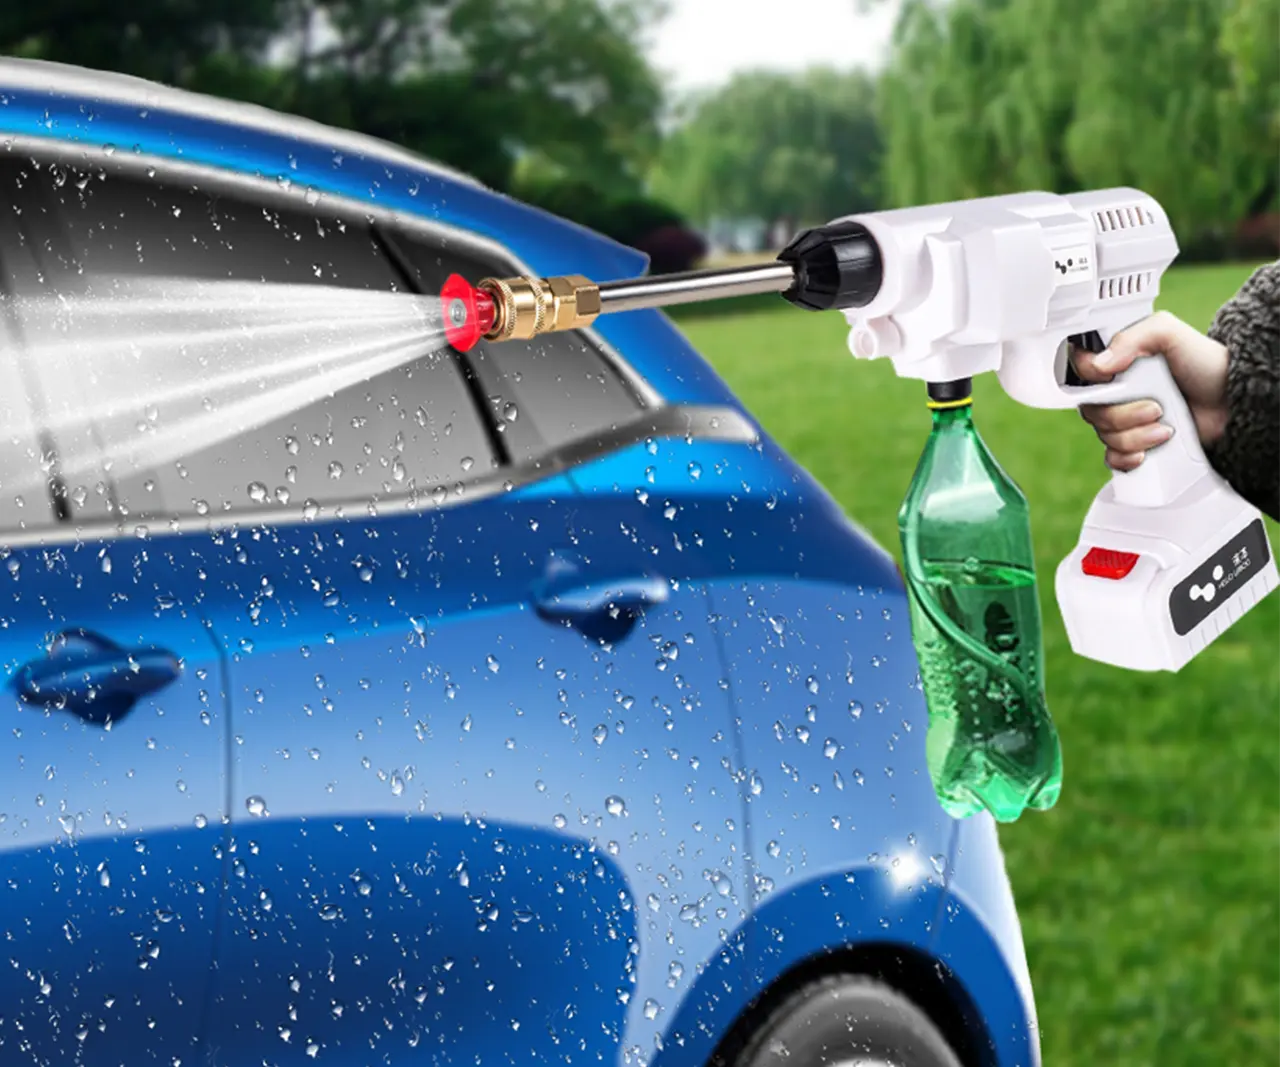 حار بيع المنزلية المحمولة الضغط آلة غسل سيارات تنظيف السيارات 24V 48VF ضغط اللاسلكي غسيل السيارات